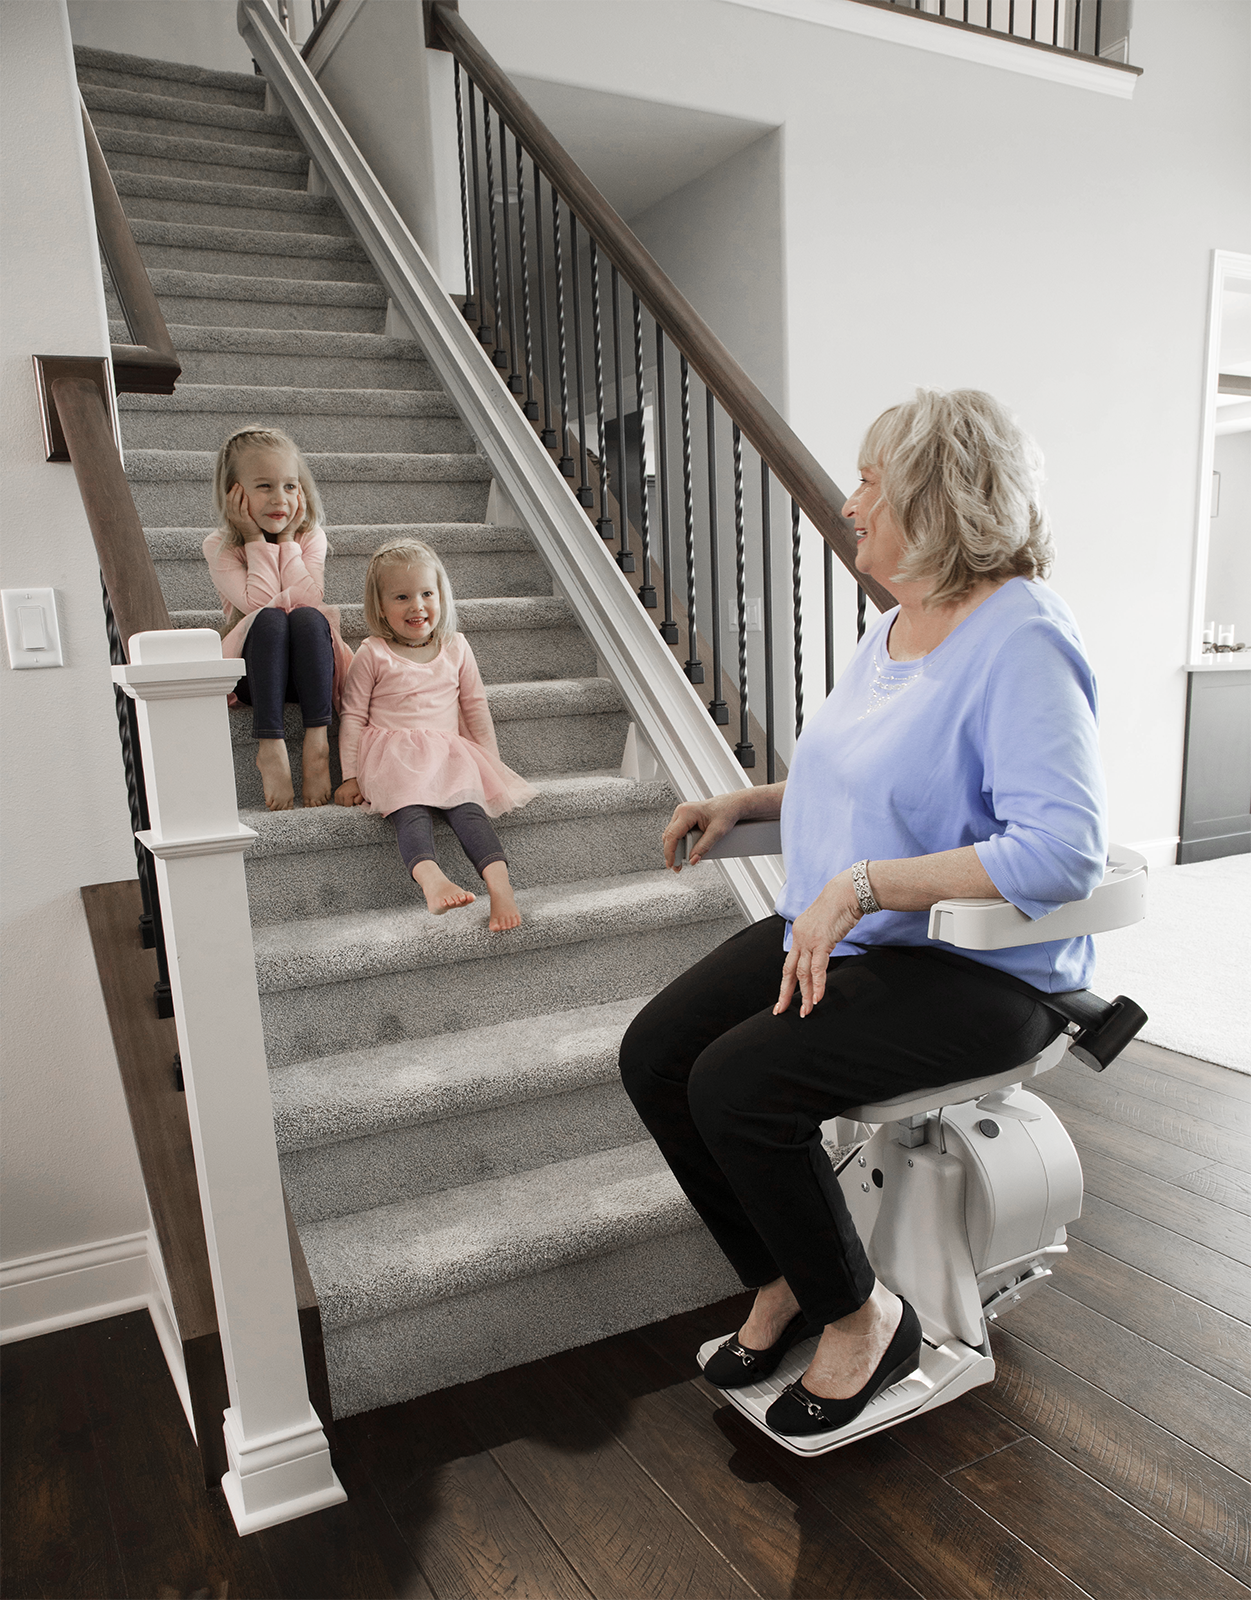 bruno-elan-lady-riding-grandkids-on-steps